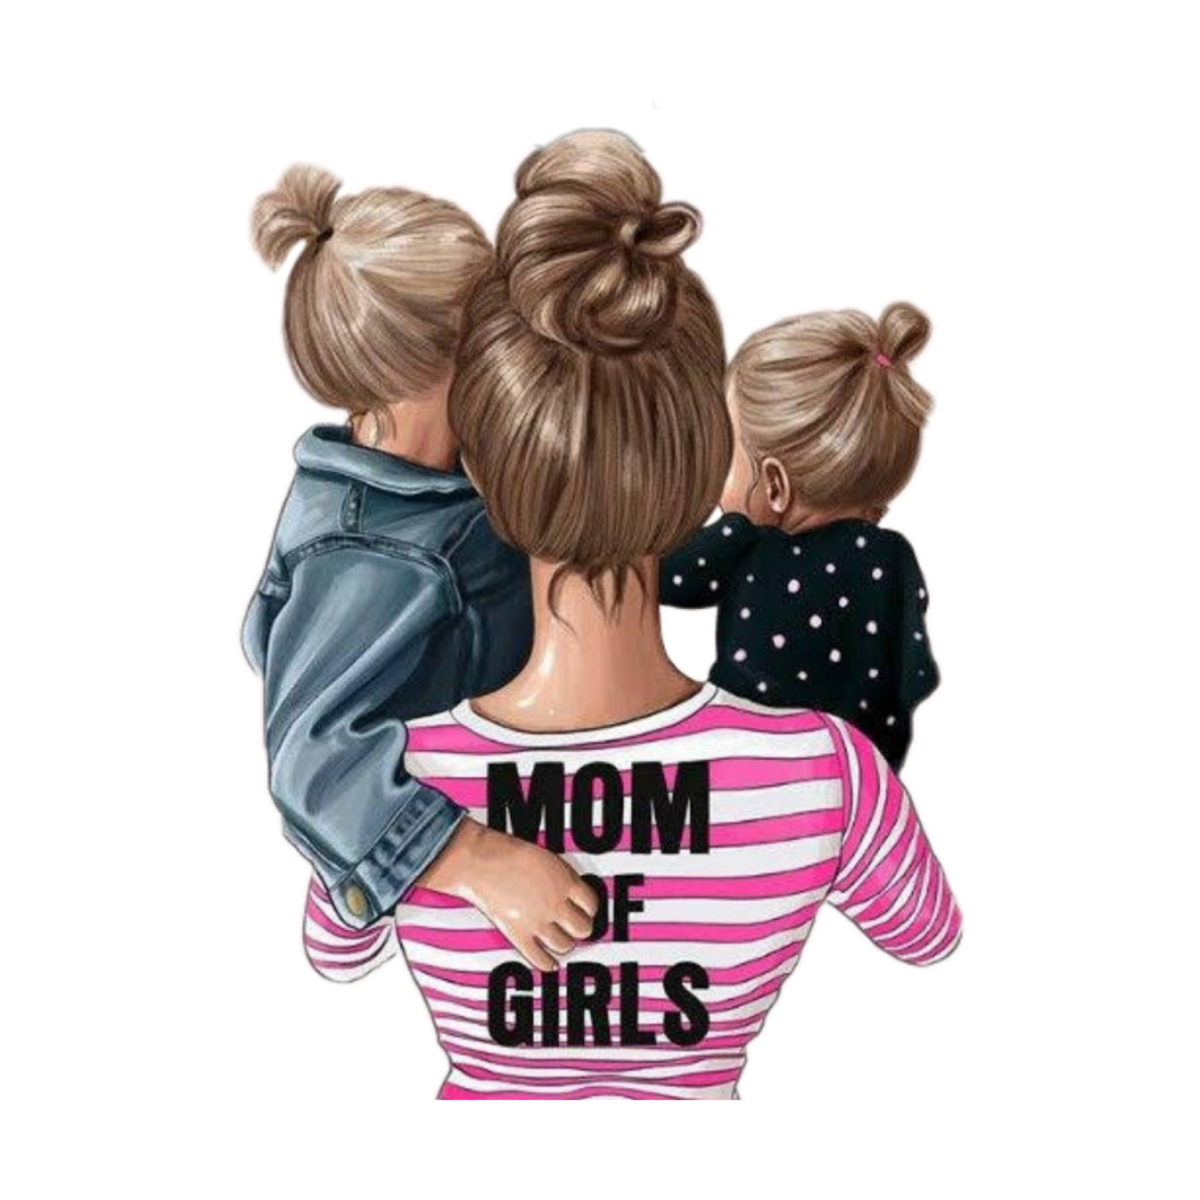 Модные иллюстрации мама и дети. Мама с двумя девочками. Иллюстрация мама с двумя дочками. Картинка на телефон мама